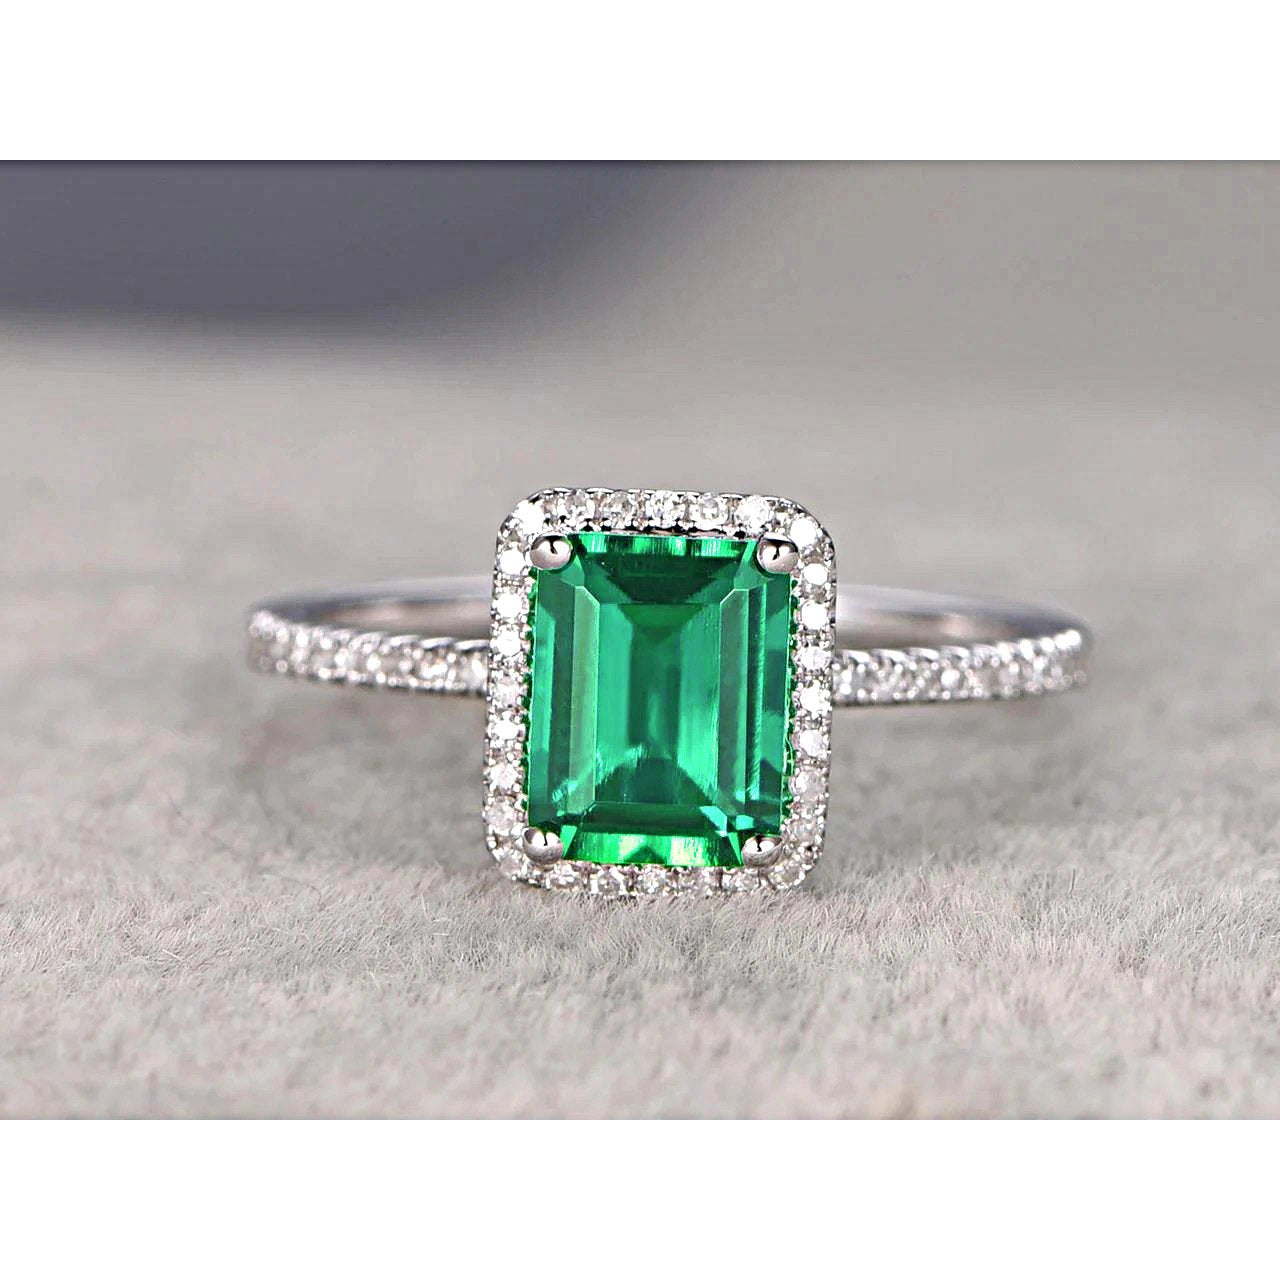 Fede nuziale con smeraldo verde a taglio smeraldo da 3,55 ct con diamante rotondo - harrychadent.it